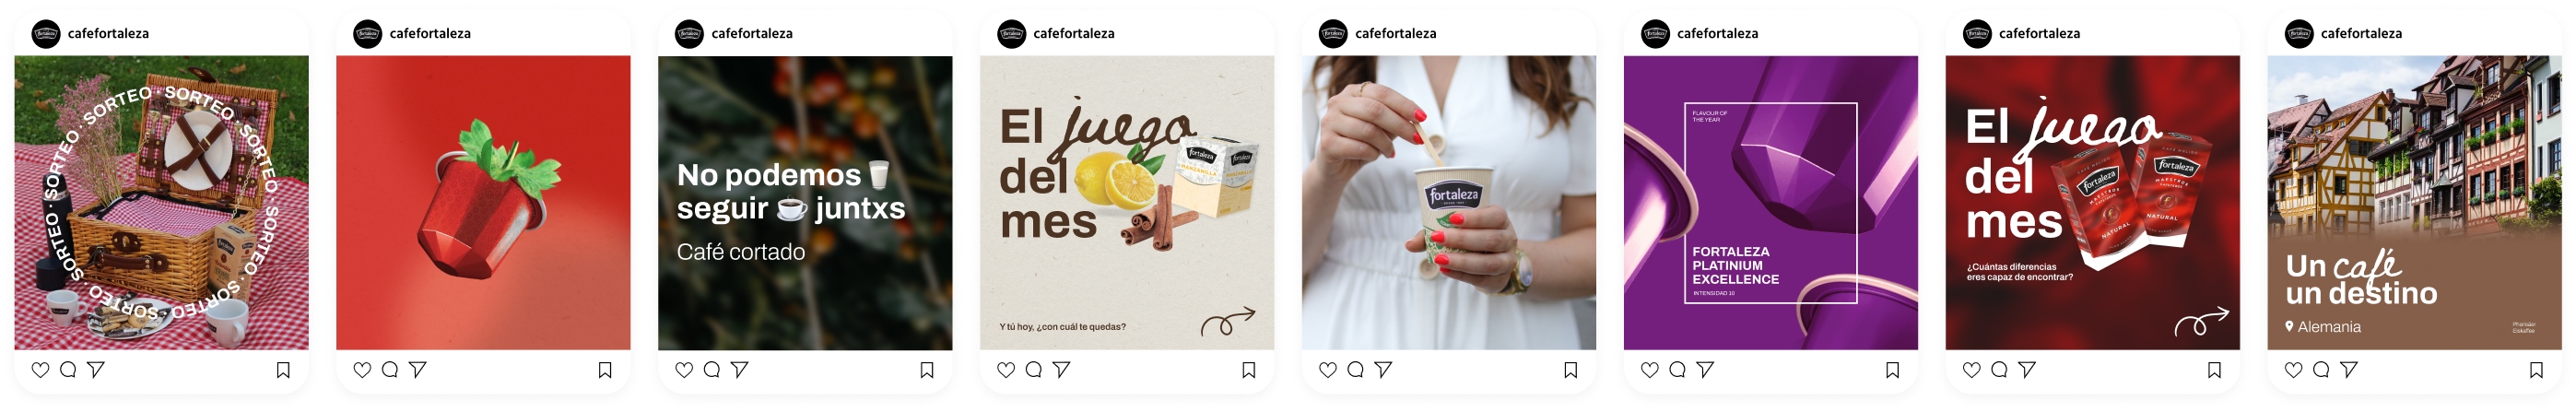 Campañas de Cafe Fortaleza en Instagram